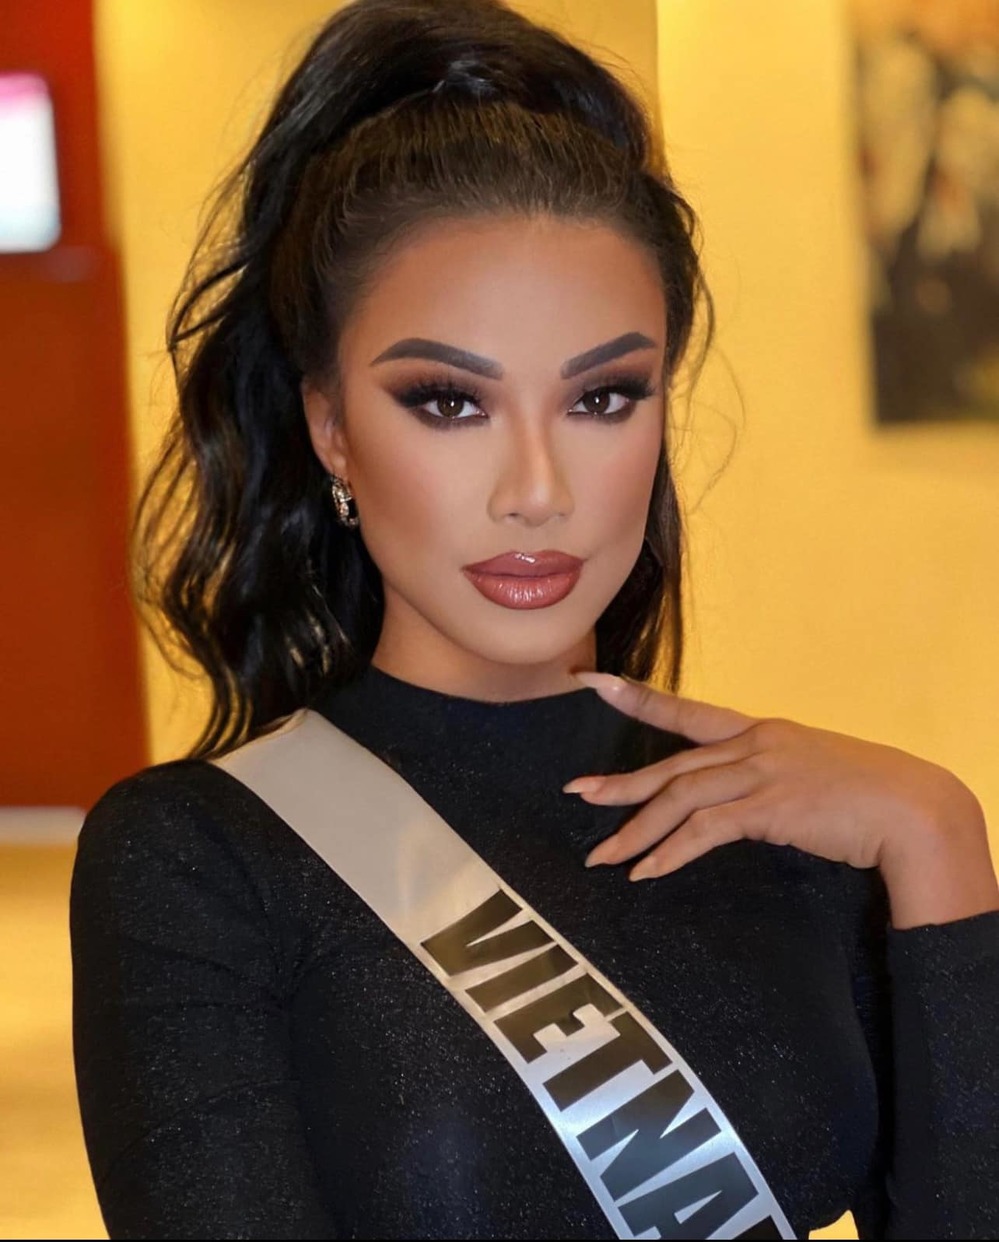  
Mỹ nhân gốc Cần Thơ là đại diện của Việt Nam tại Miss Universe 2021. (Ảnh: FB Nguyễn Huỳnh Kim Duyên)